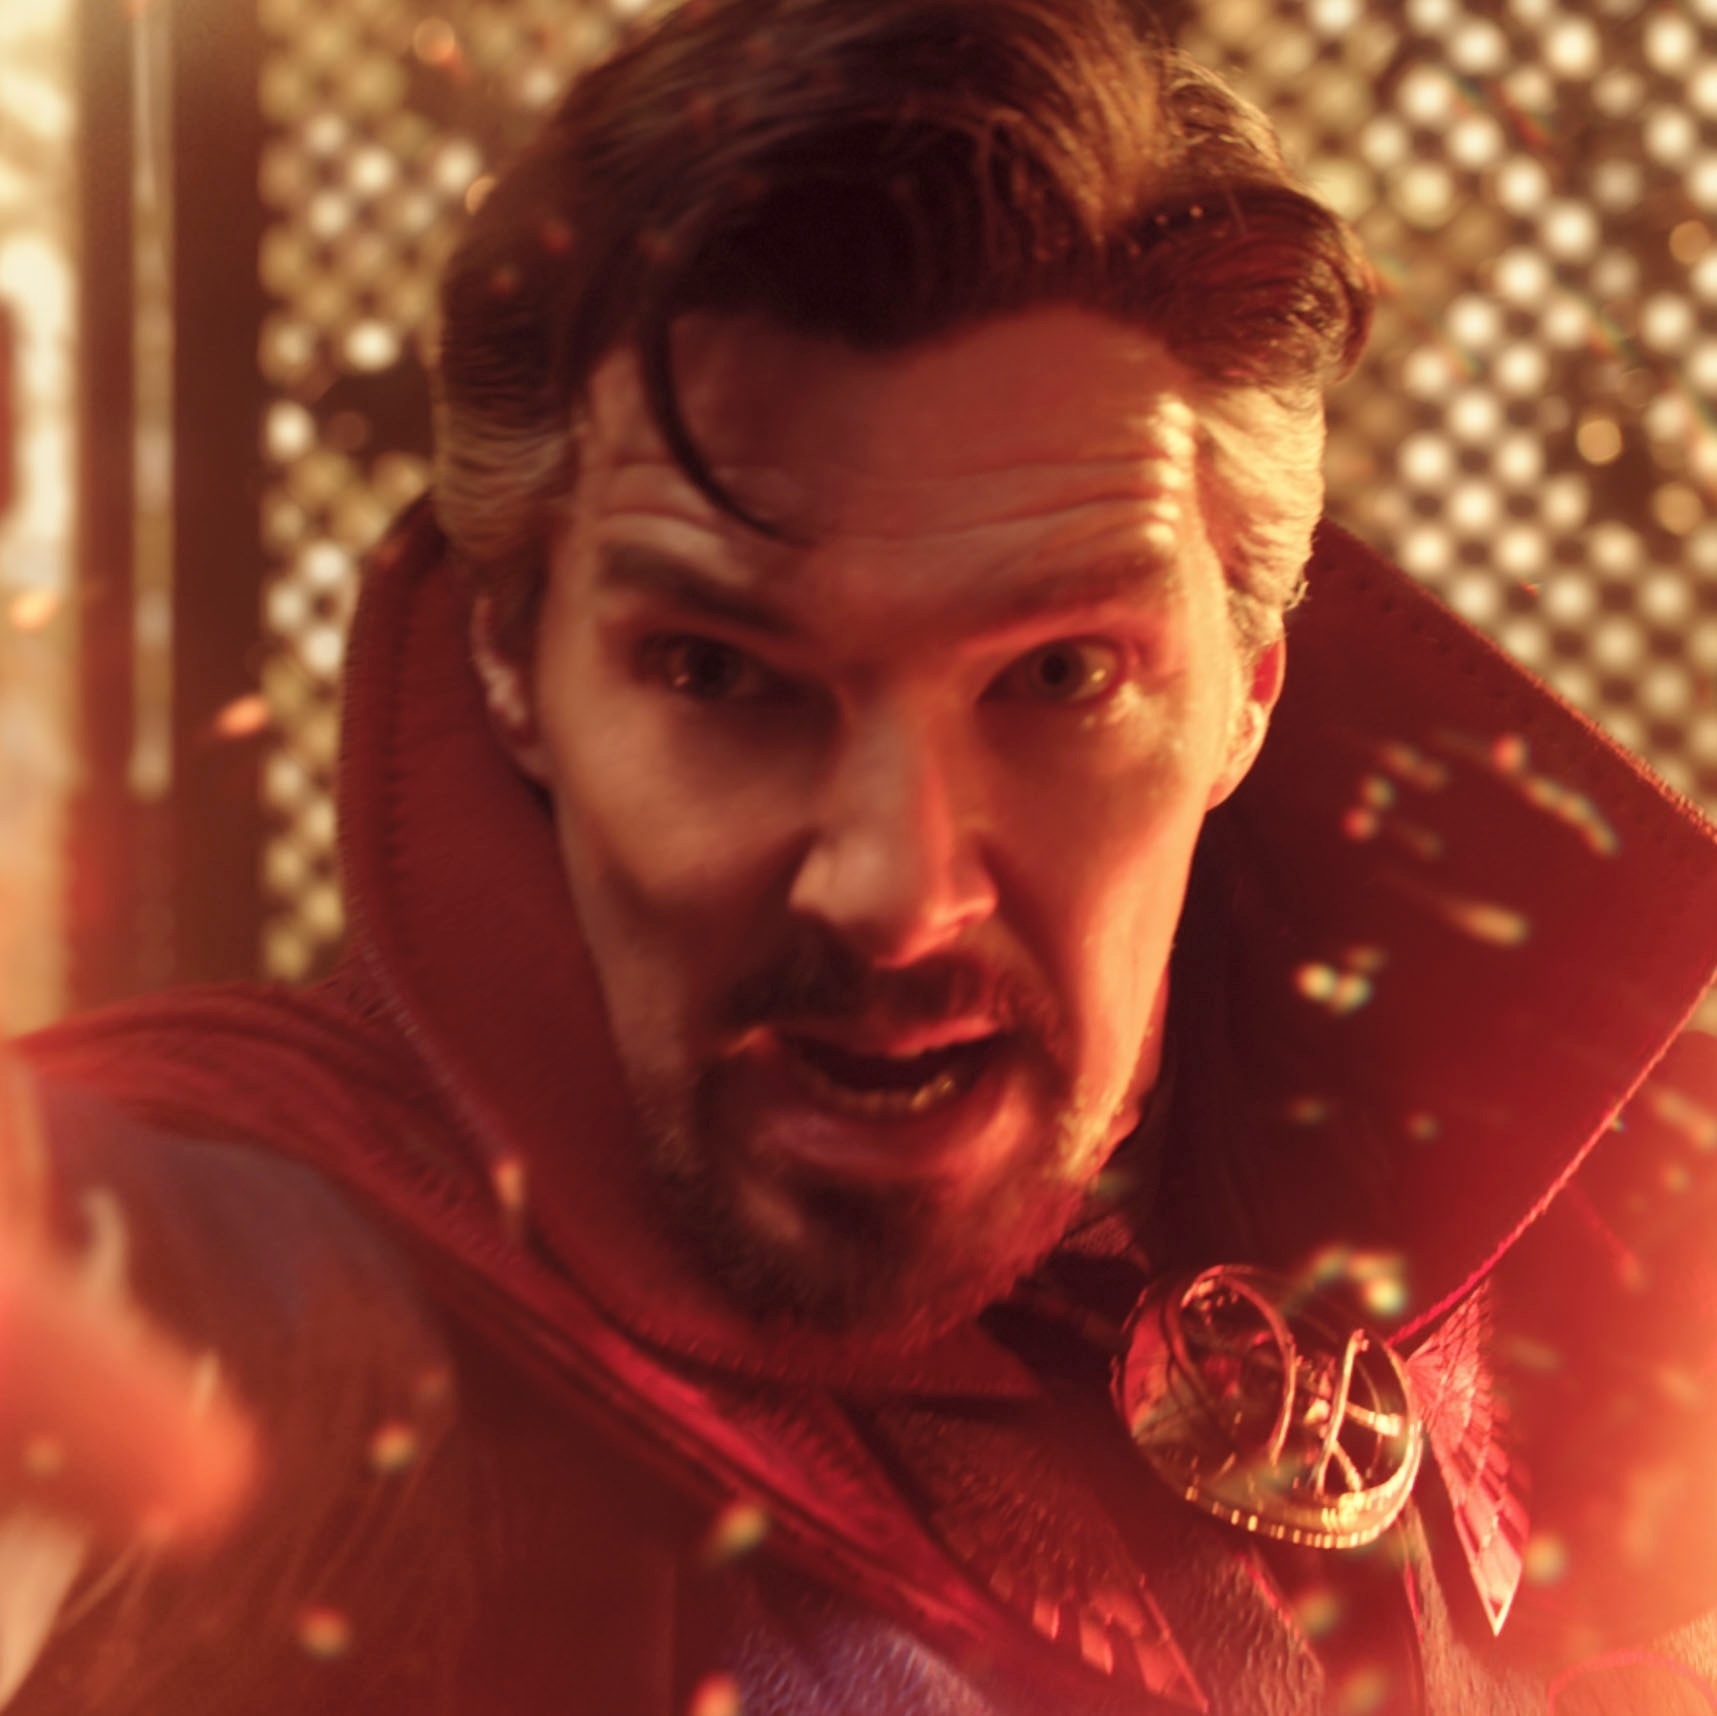 Doutor Estranho no Multiverso da Loucura: Marvel mostra Stephen de 3 olhos  em novo teaser; veja